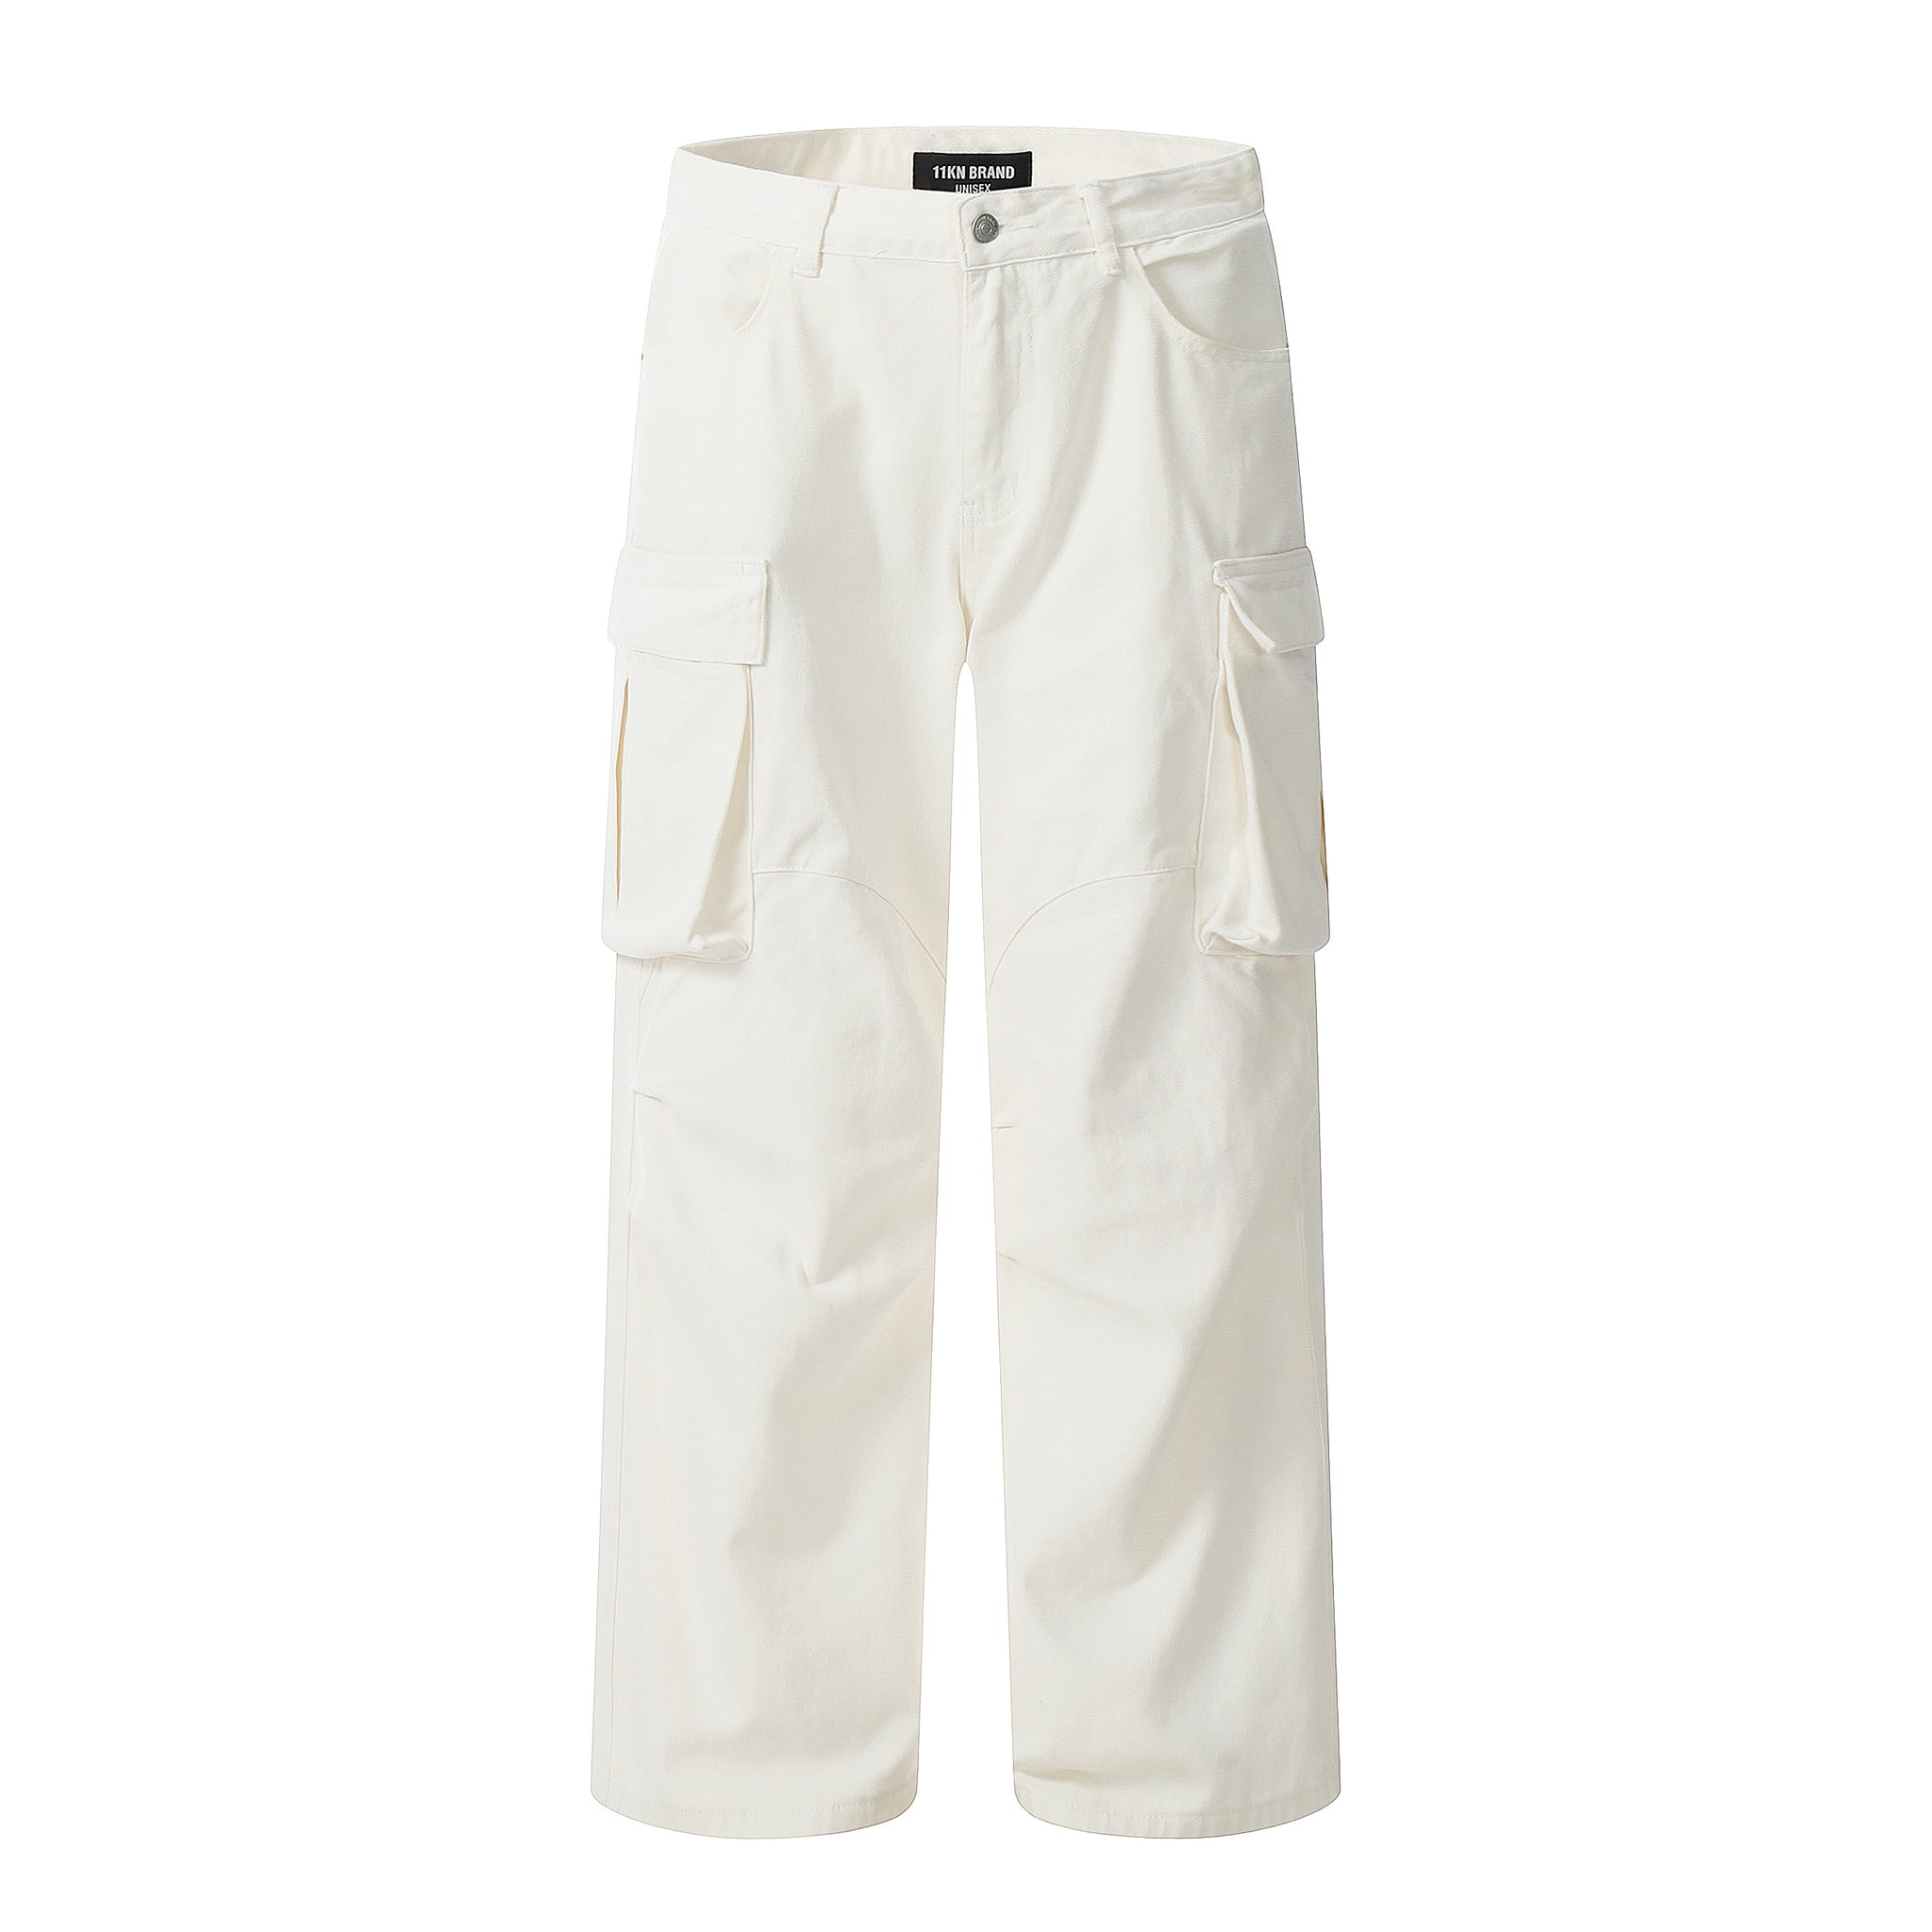 White Cargo Pants Pockets, Streetwear Jeans Pants White